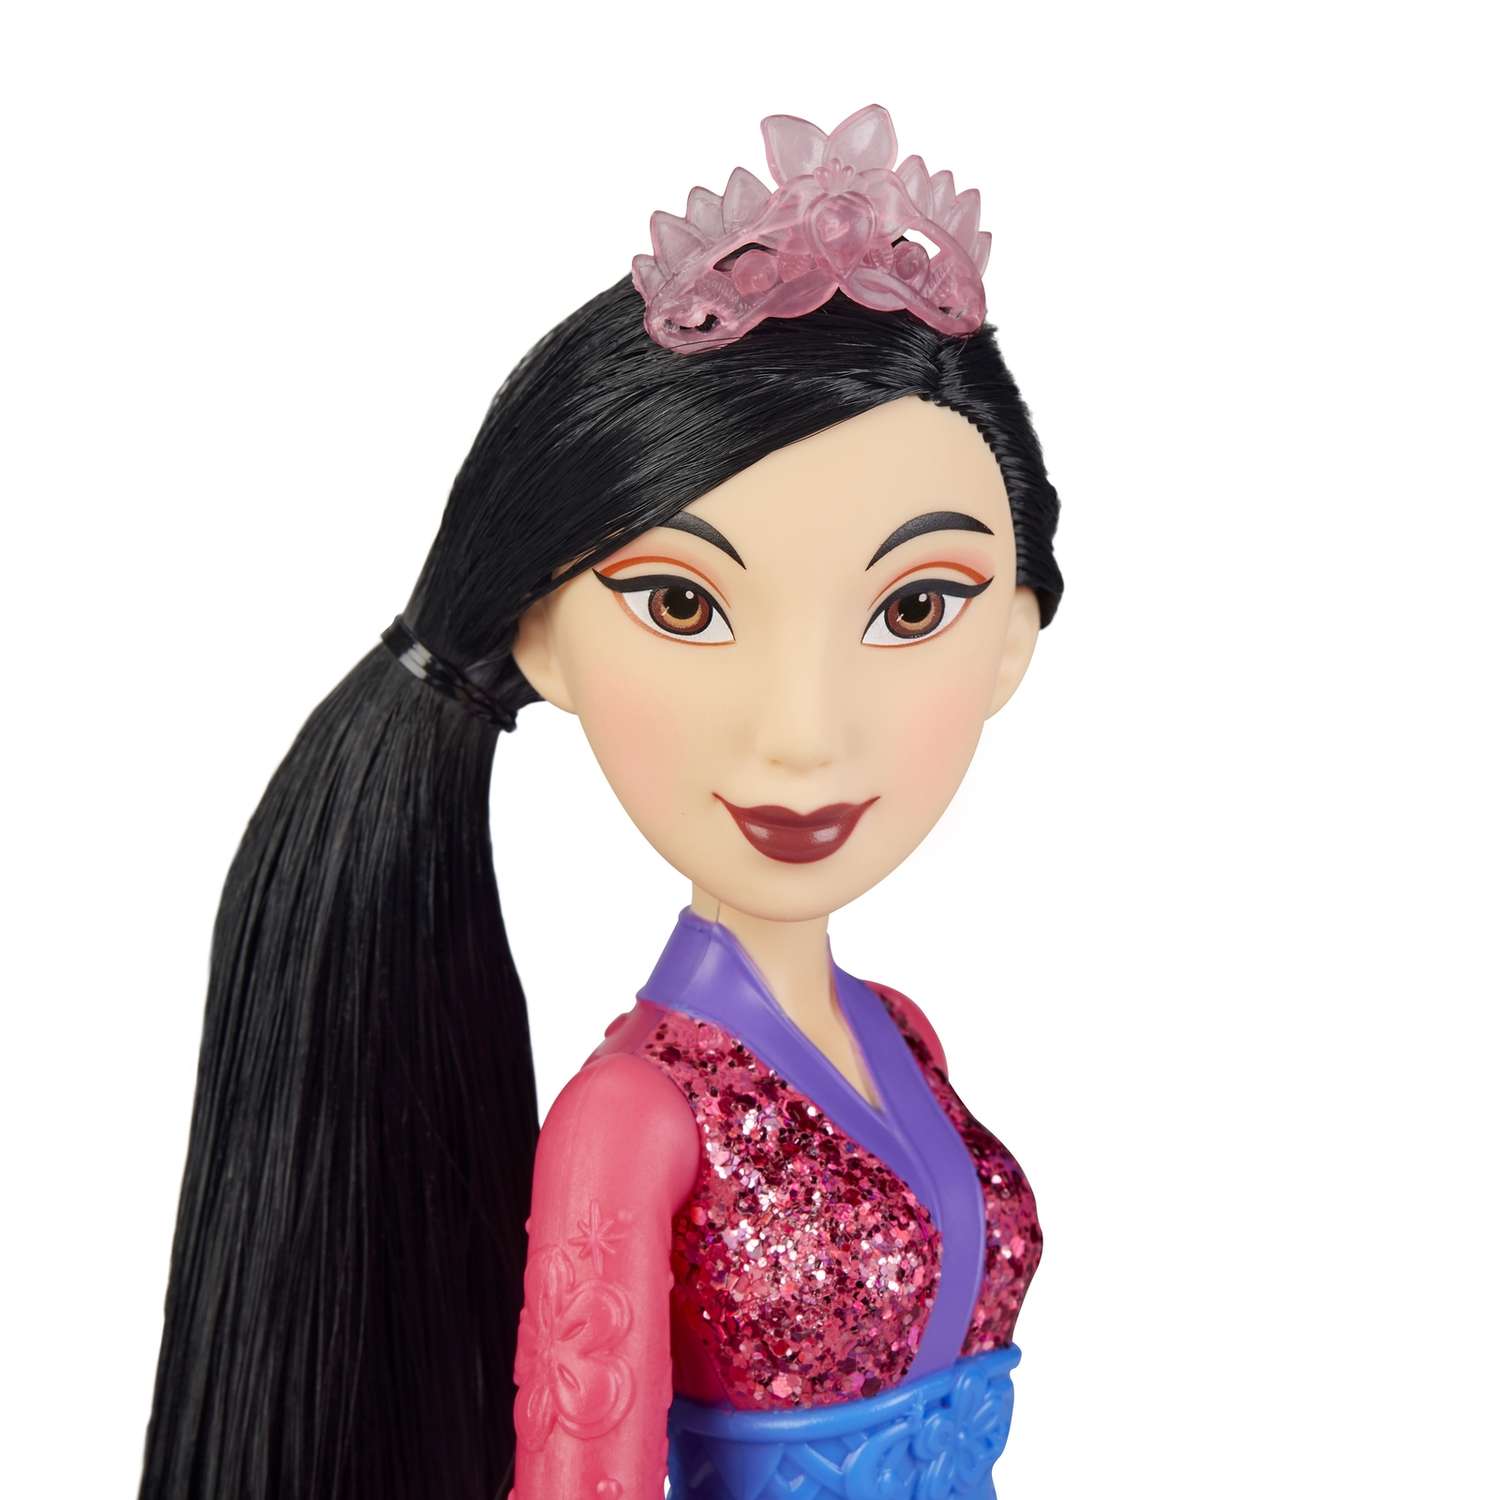 Кукла Disney Princess Hasbro C Мулан E4167EU4 E4022EU4 - фото 11